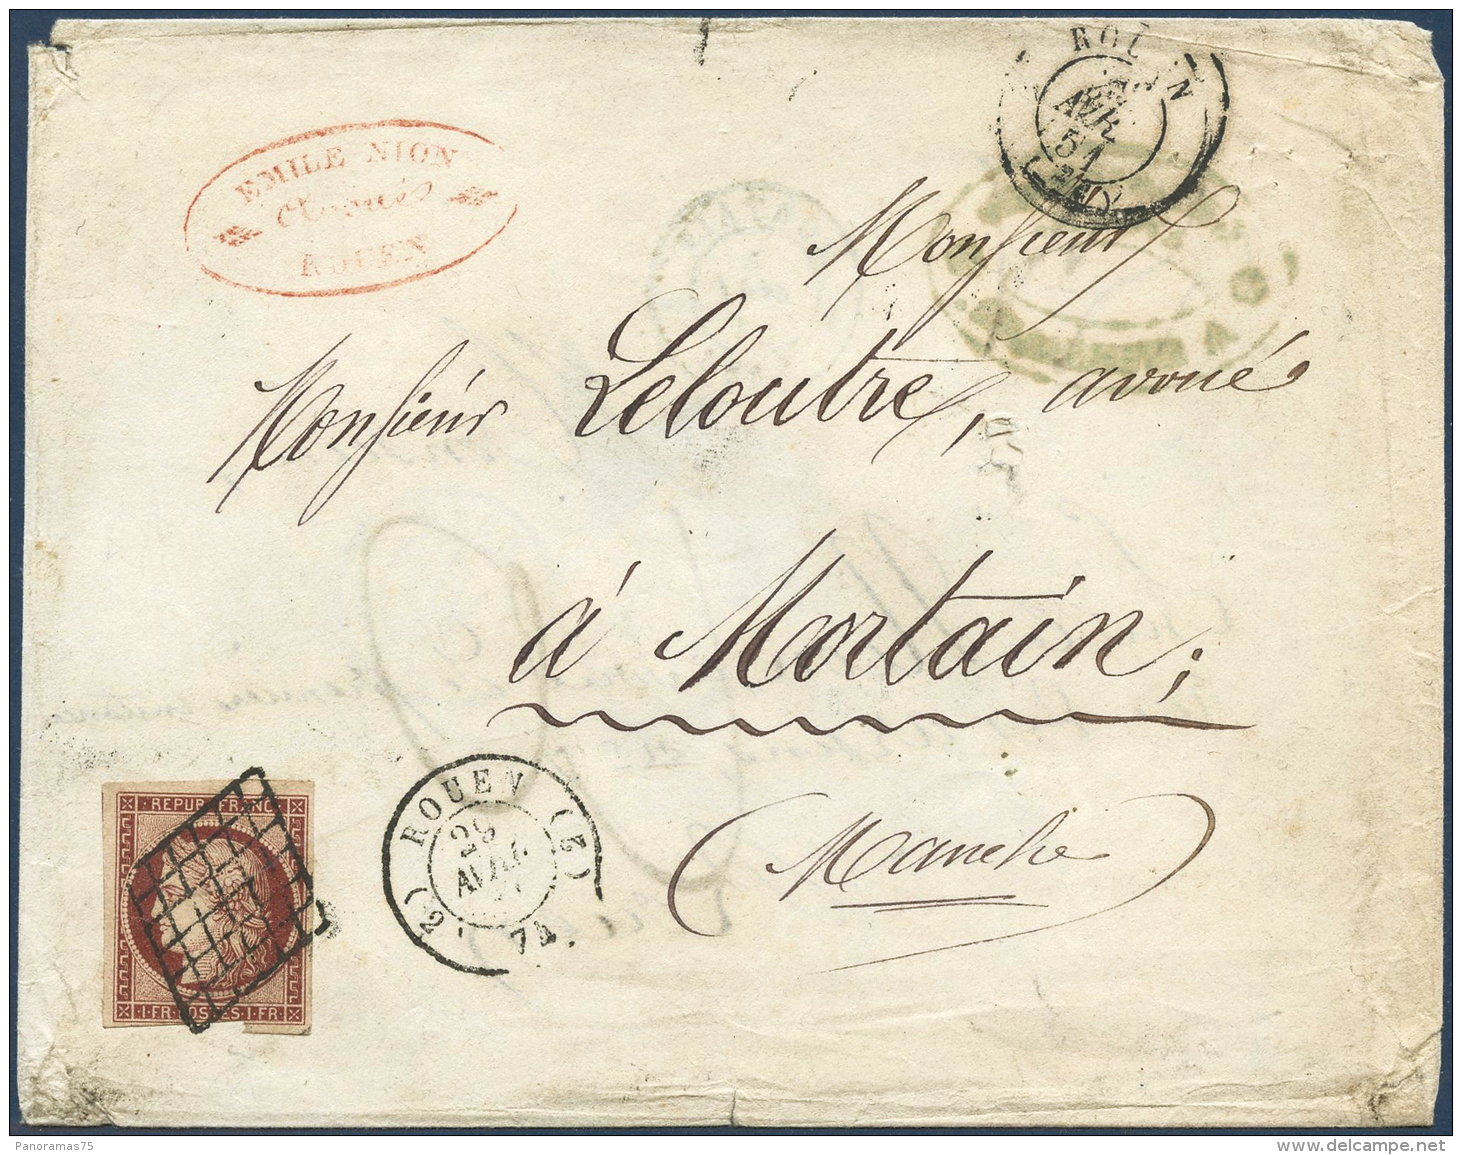 N°6 1F Carmin S/lettre, Réutilisation Beau 2ème Choix - B - 1849-1850 Cérès